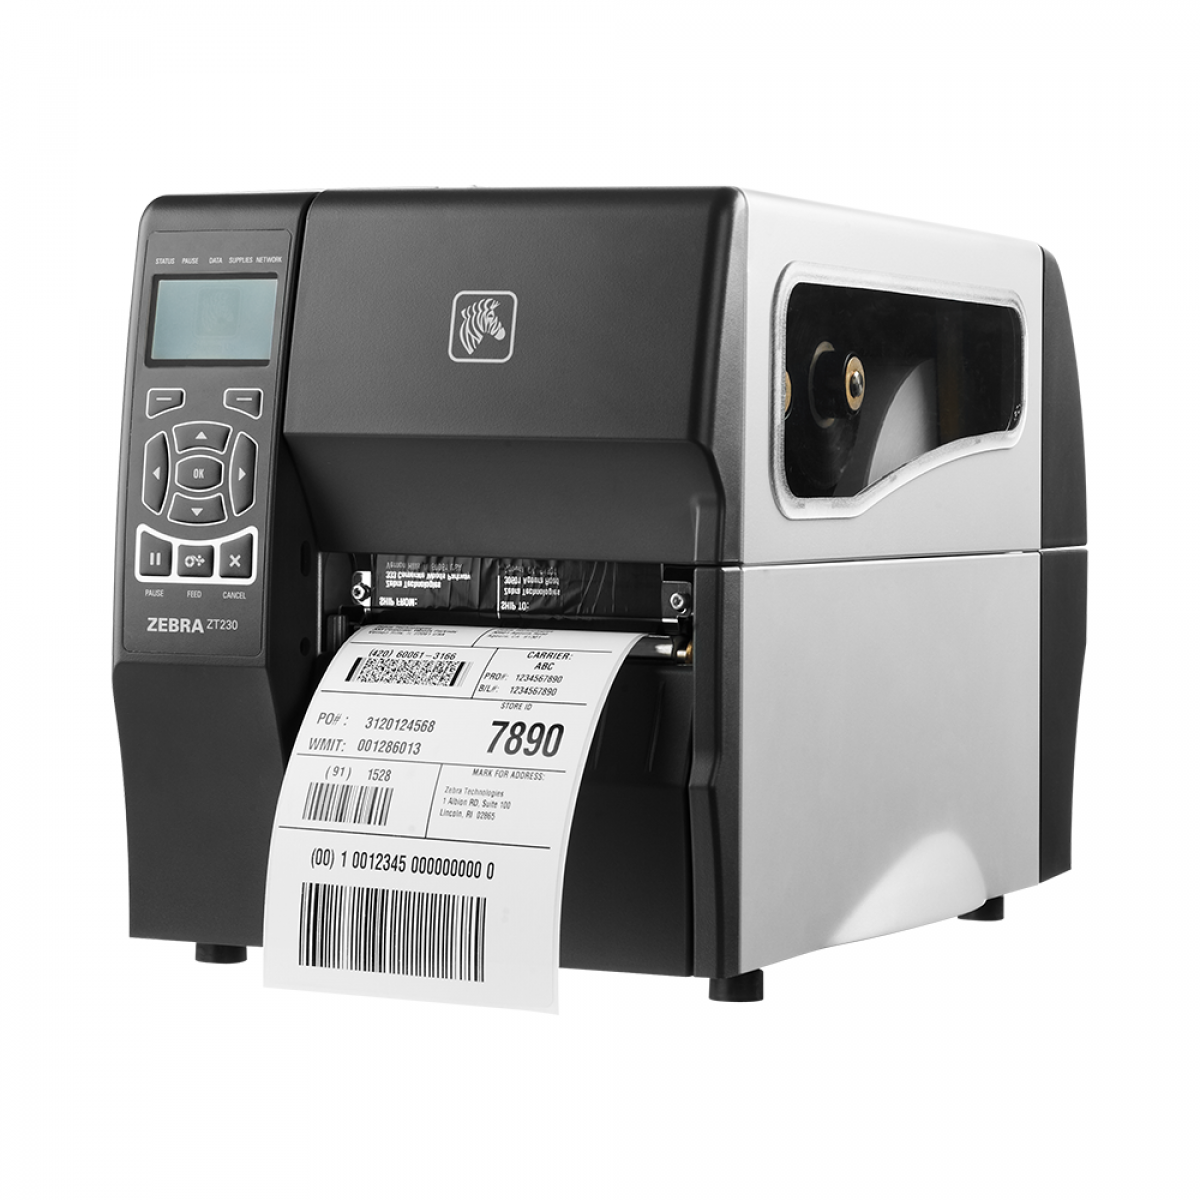 Zebra ZT230 rugged industrial printer